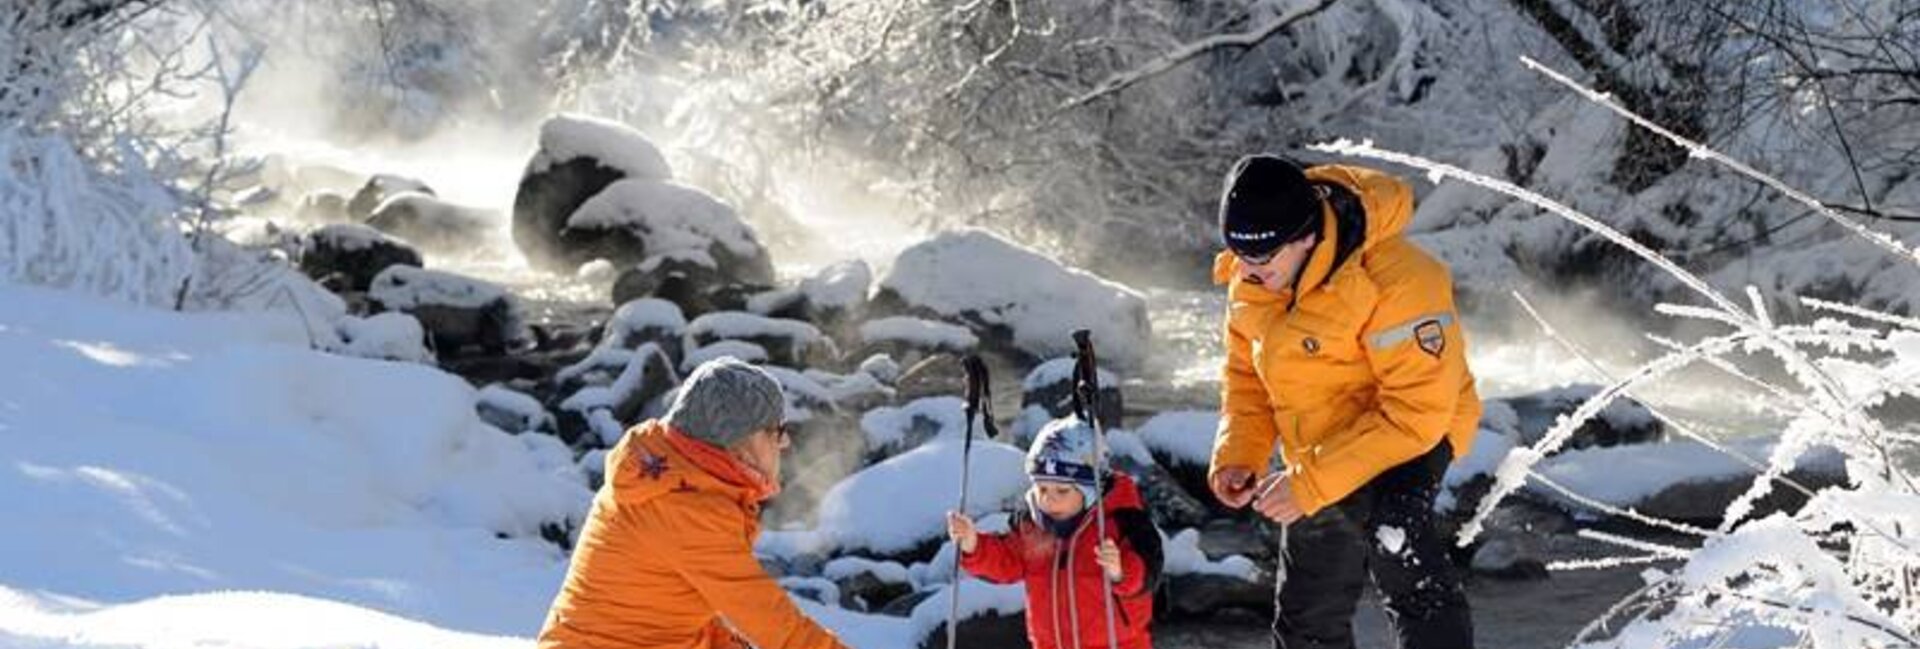 Skigebiet Passo Rolle - Skiurlaub Passo Rolle, Winterurlaub mit Kindern